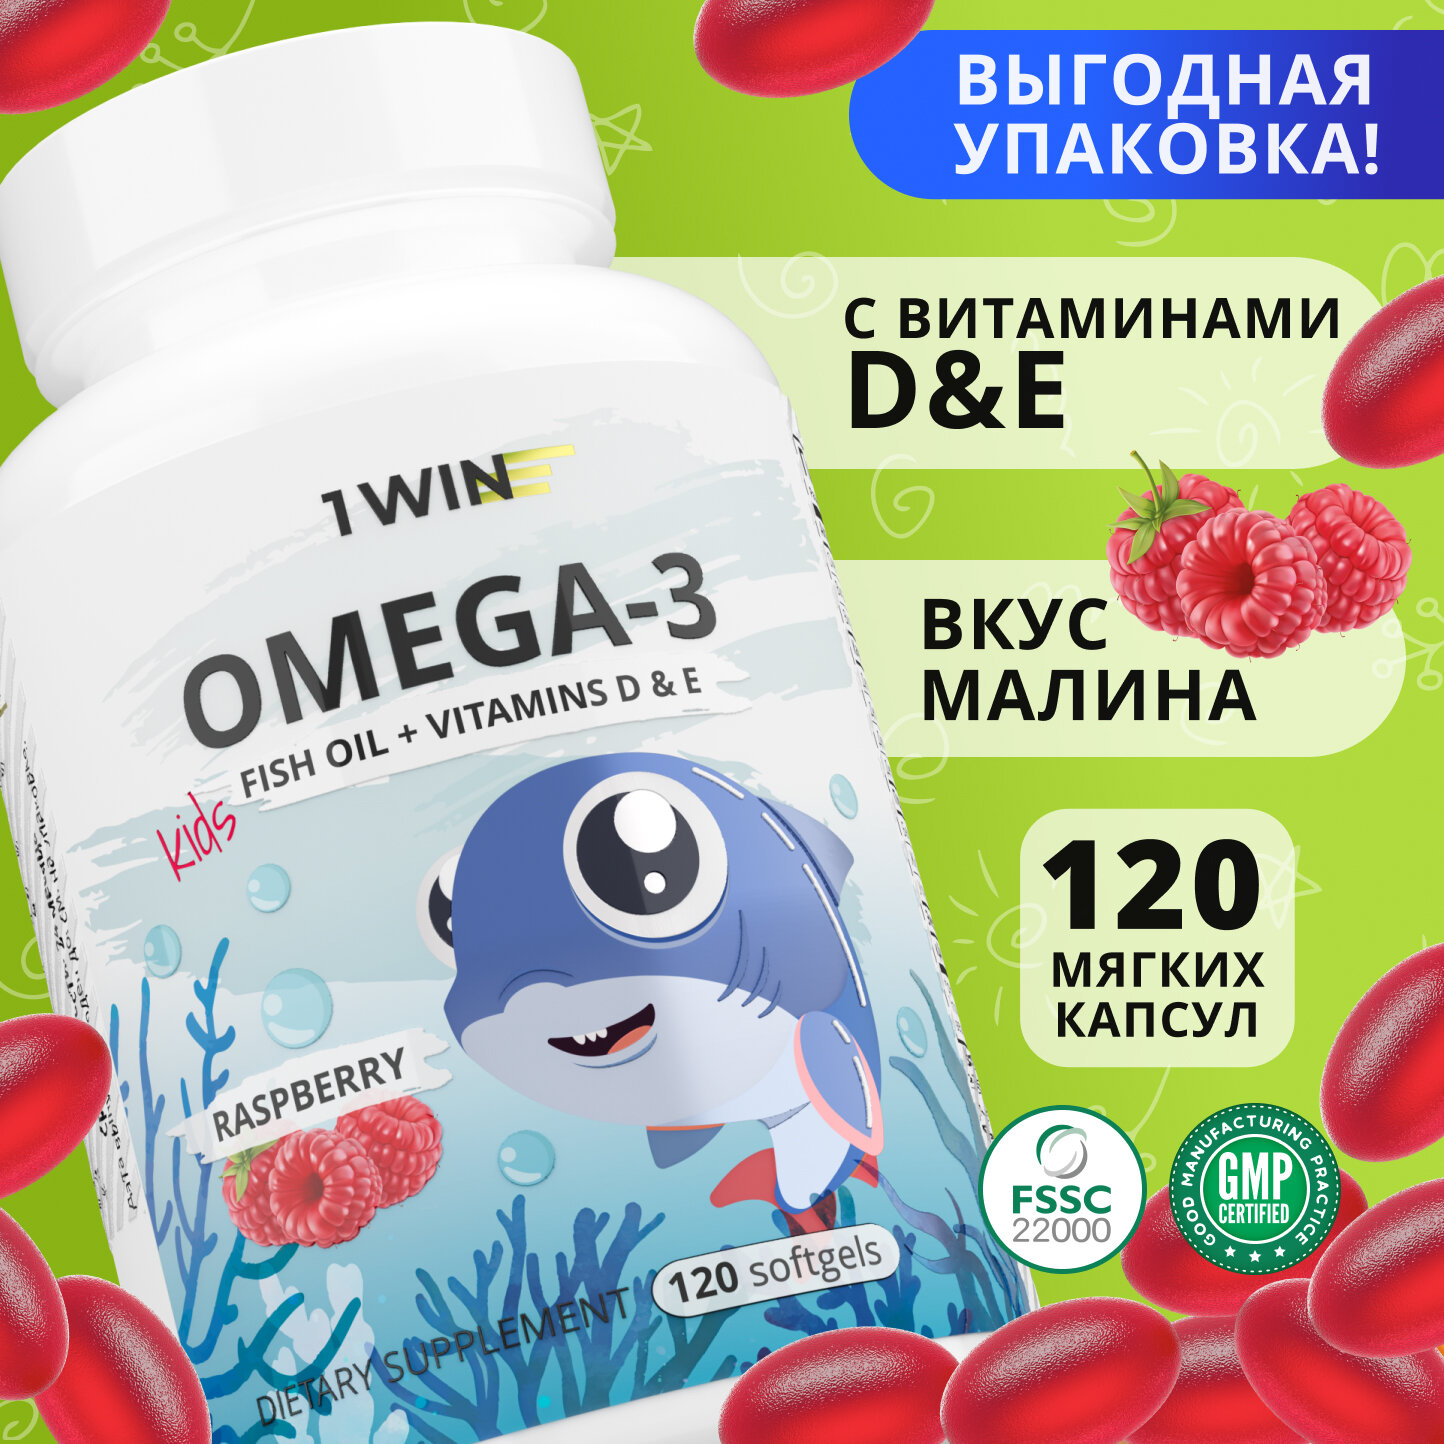 Детская Омега 3 жевательная 1WIN Omega-3 исландский рыбий жир, с Витаминами Д 3 (D) и Е, со вкусом малины, 120 капсул